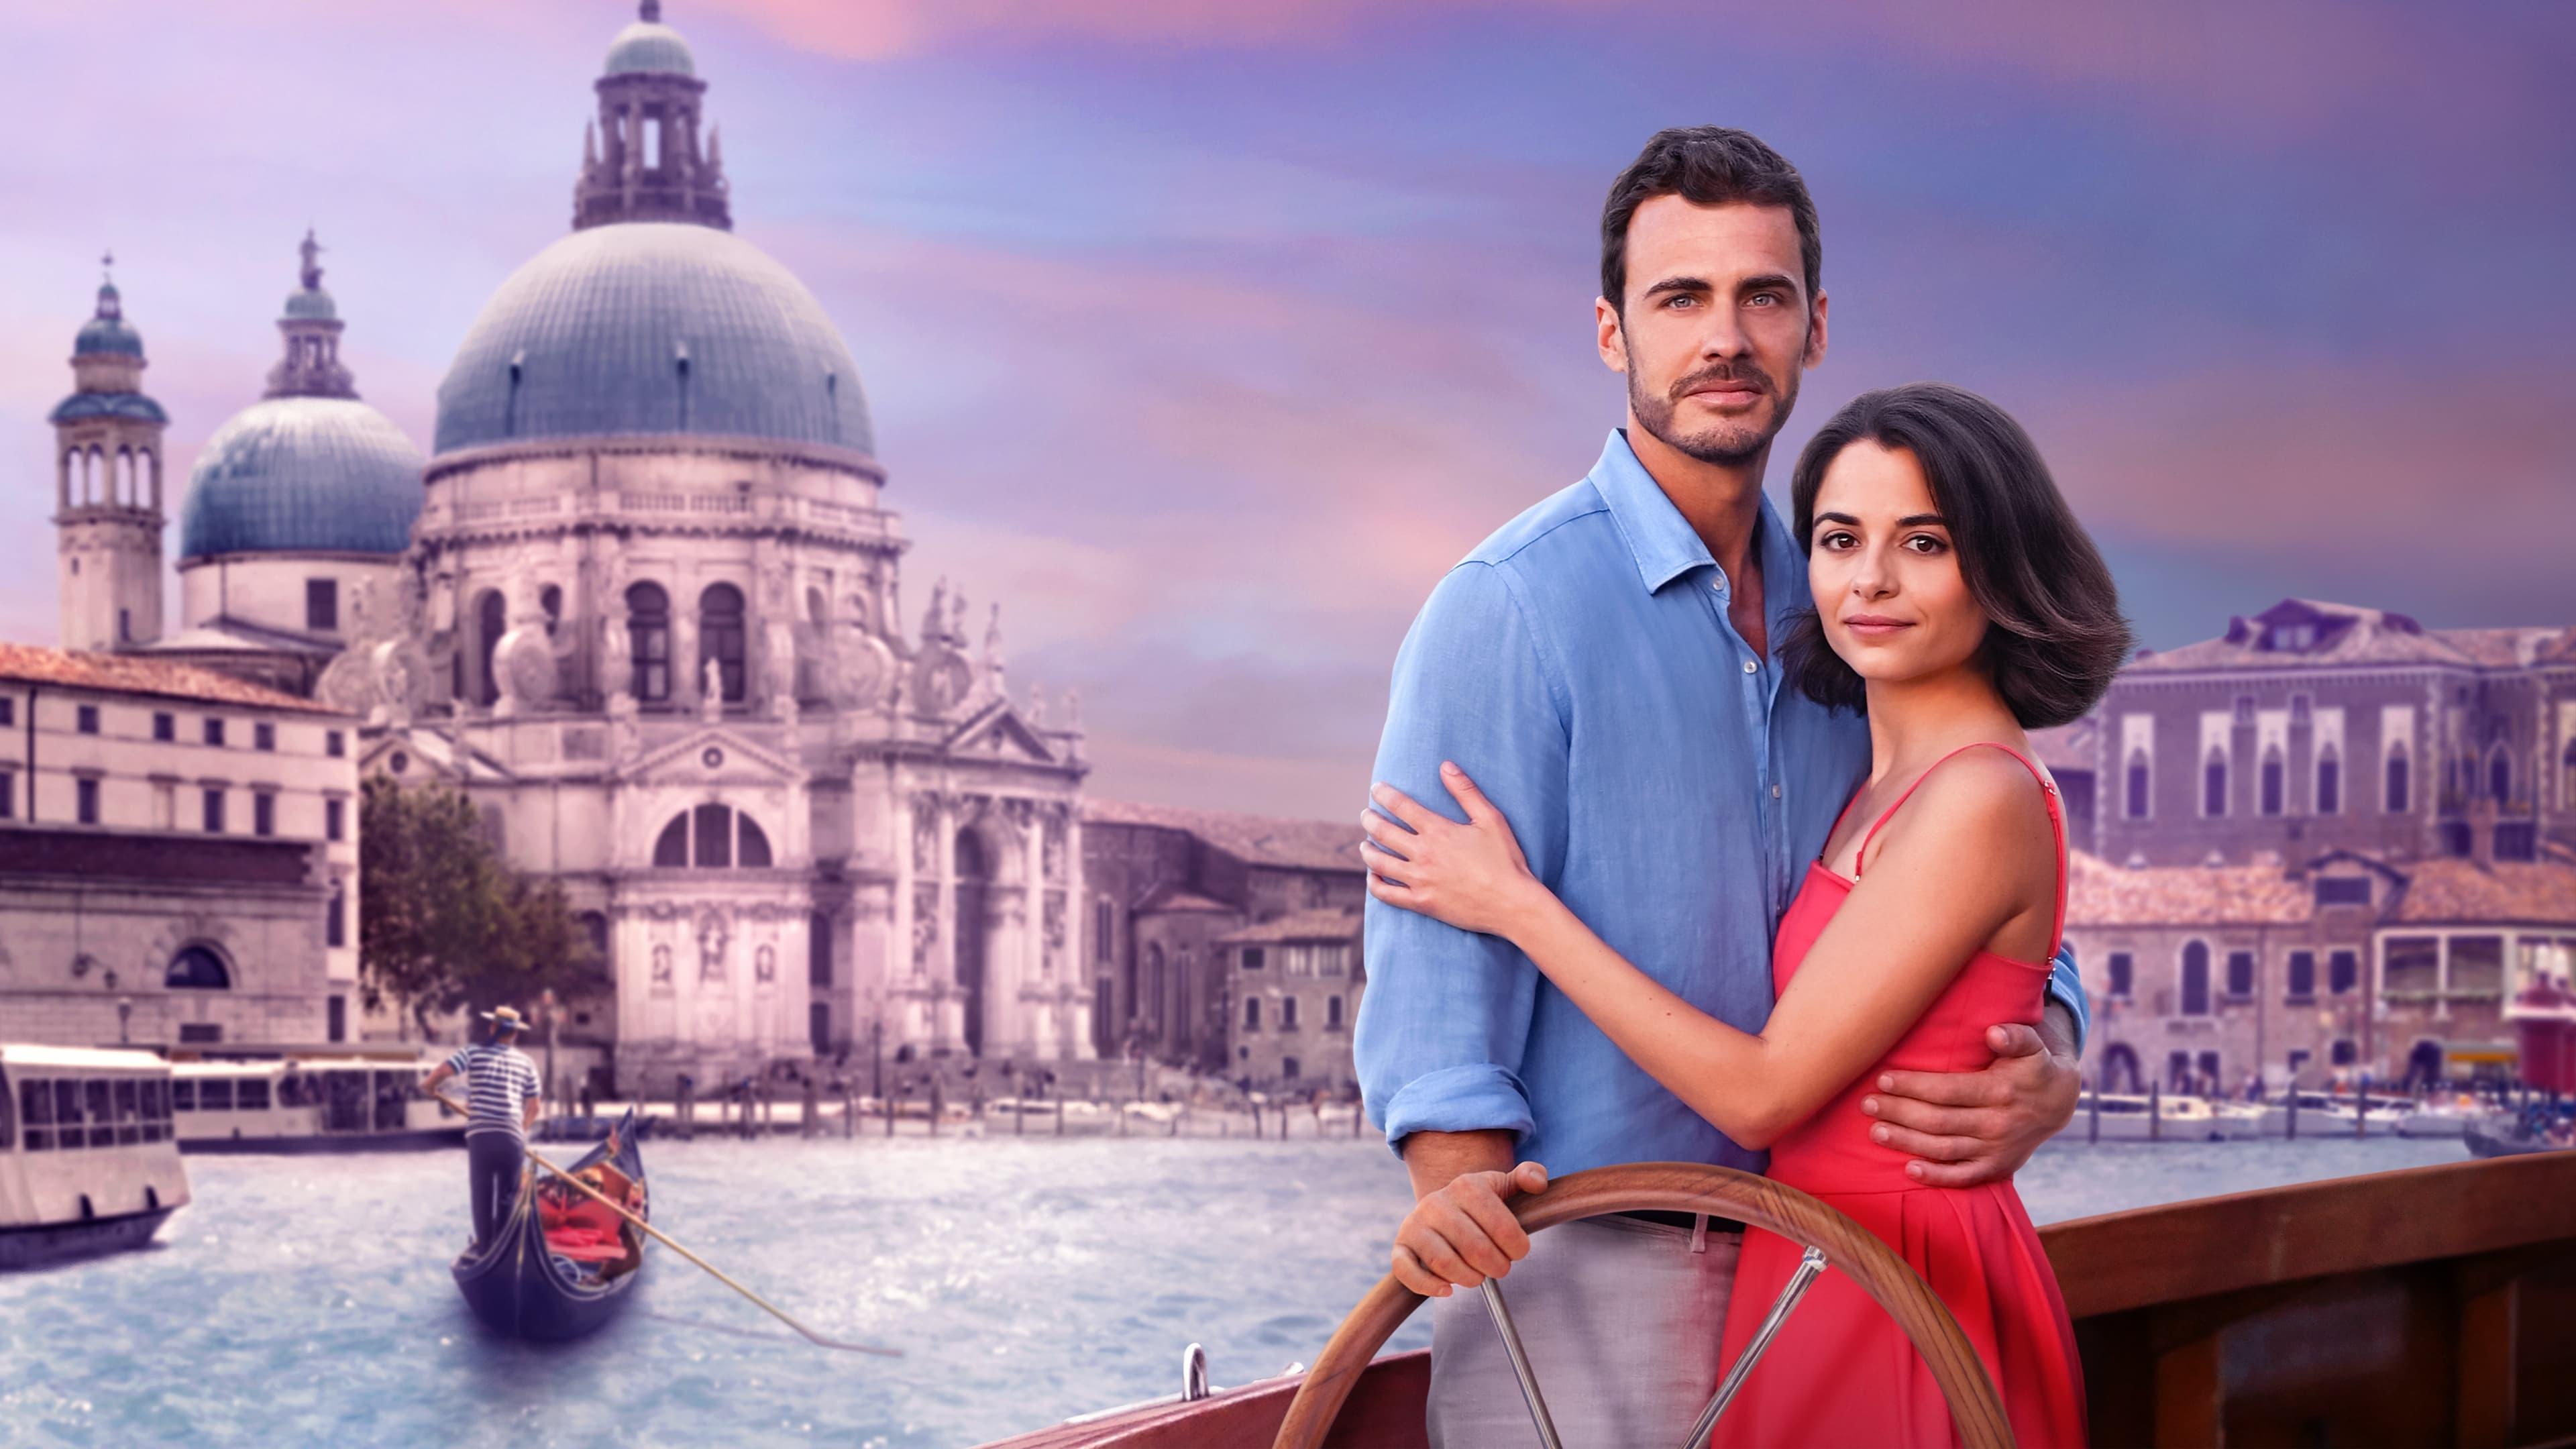 A Very Venice Romance backdrop